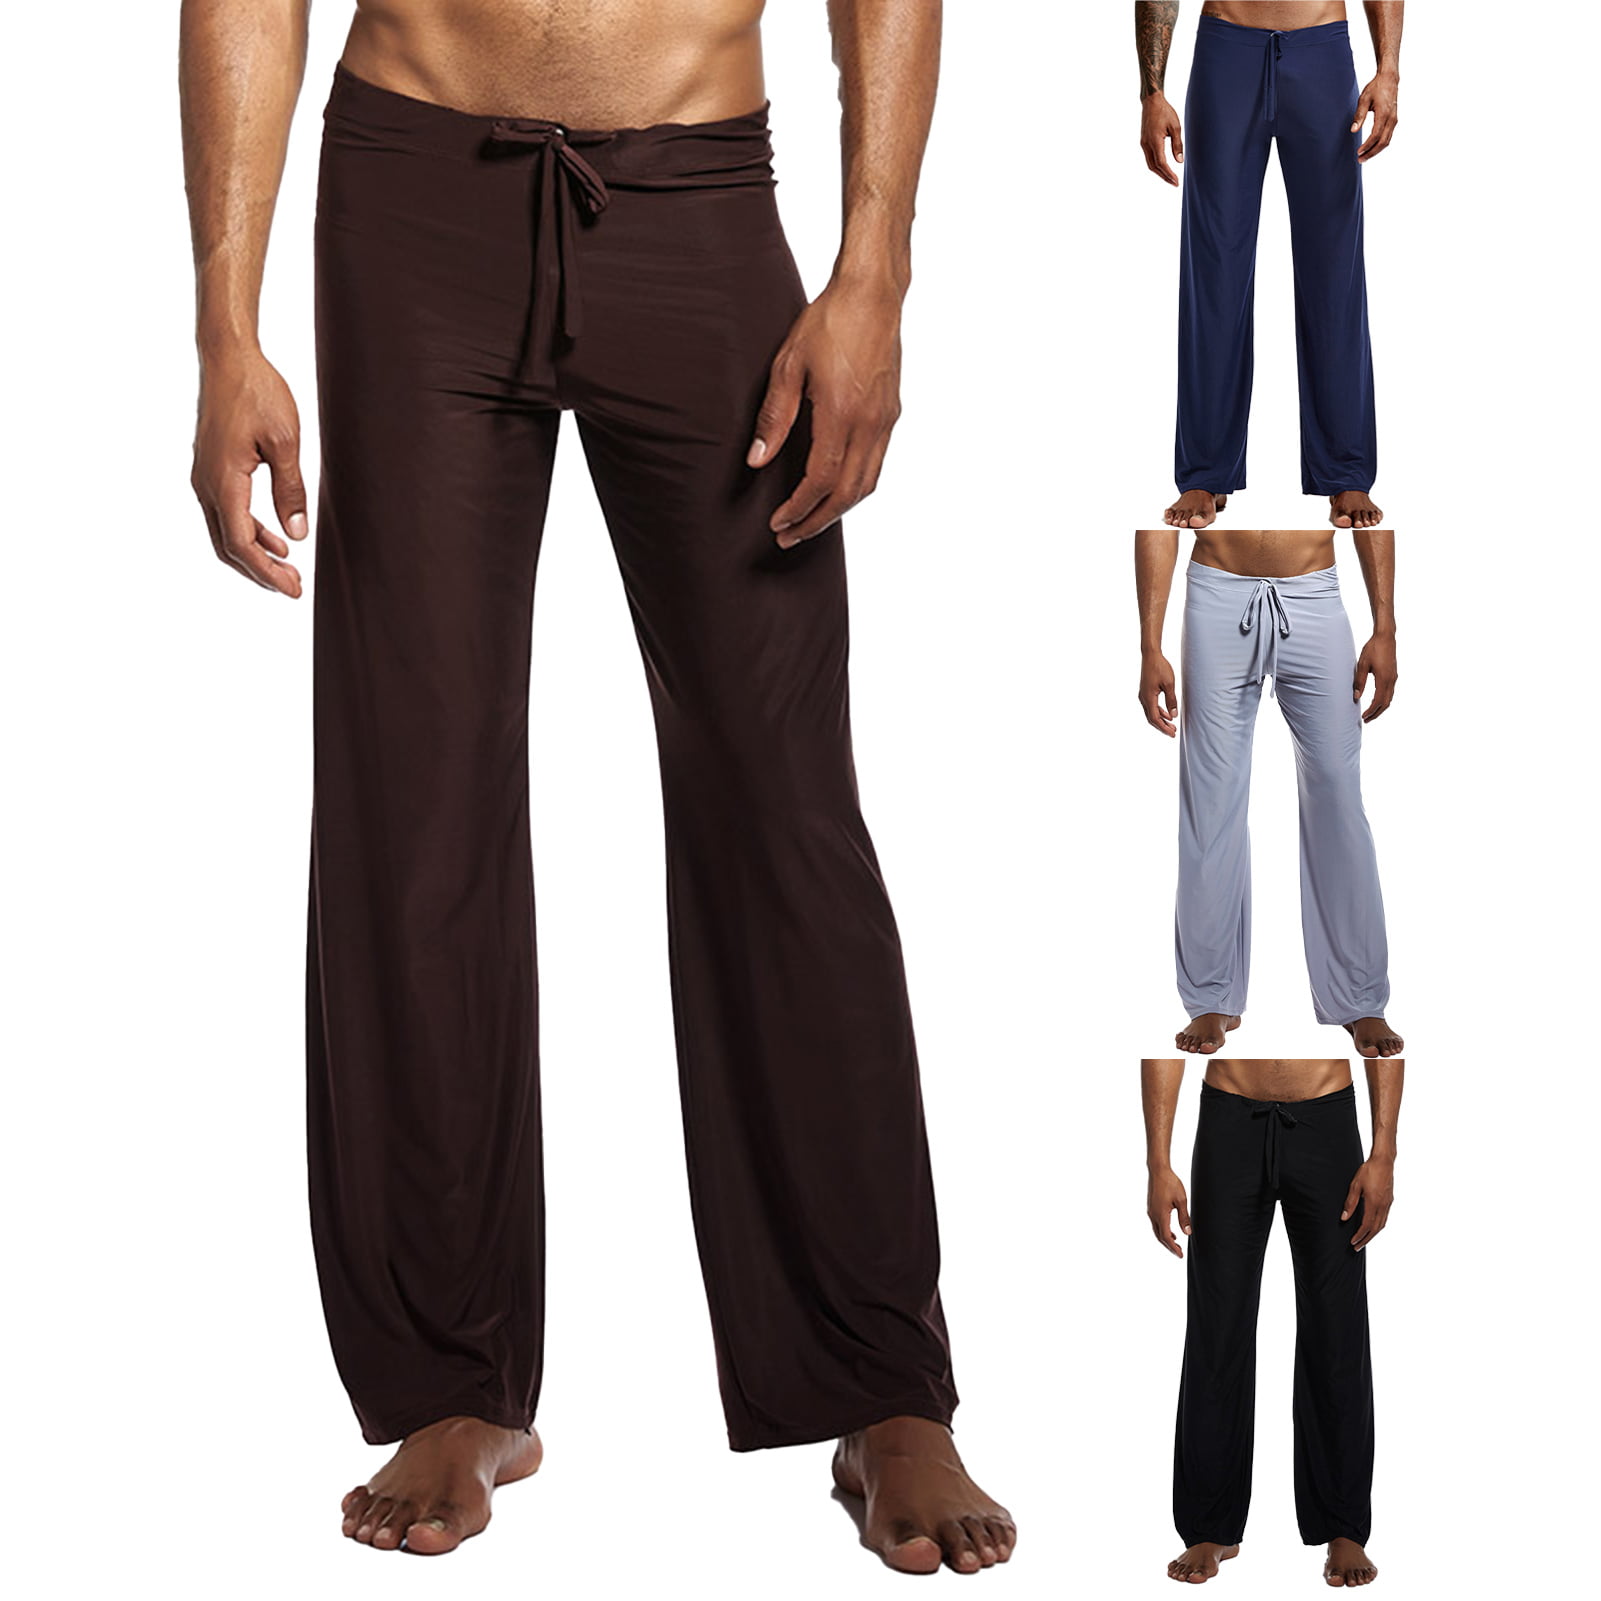 cYkl Men Pants Solid Color Low Waist Elastic Waist Cool Yoga Pants for ...